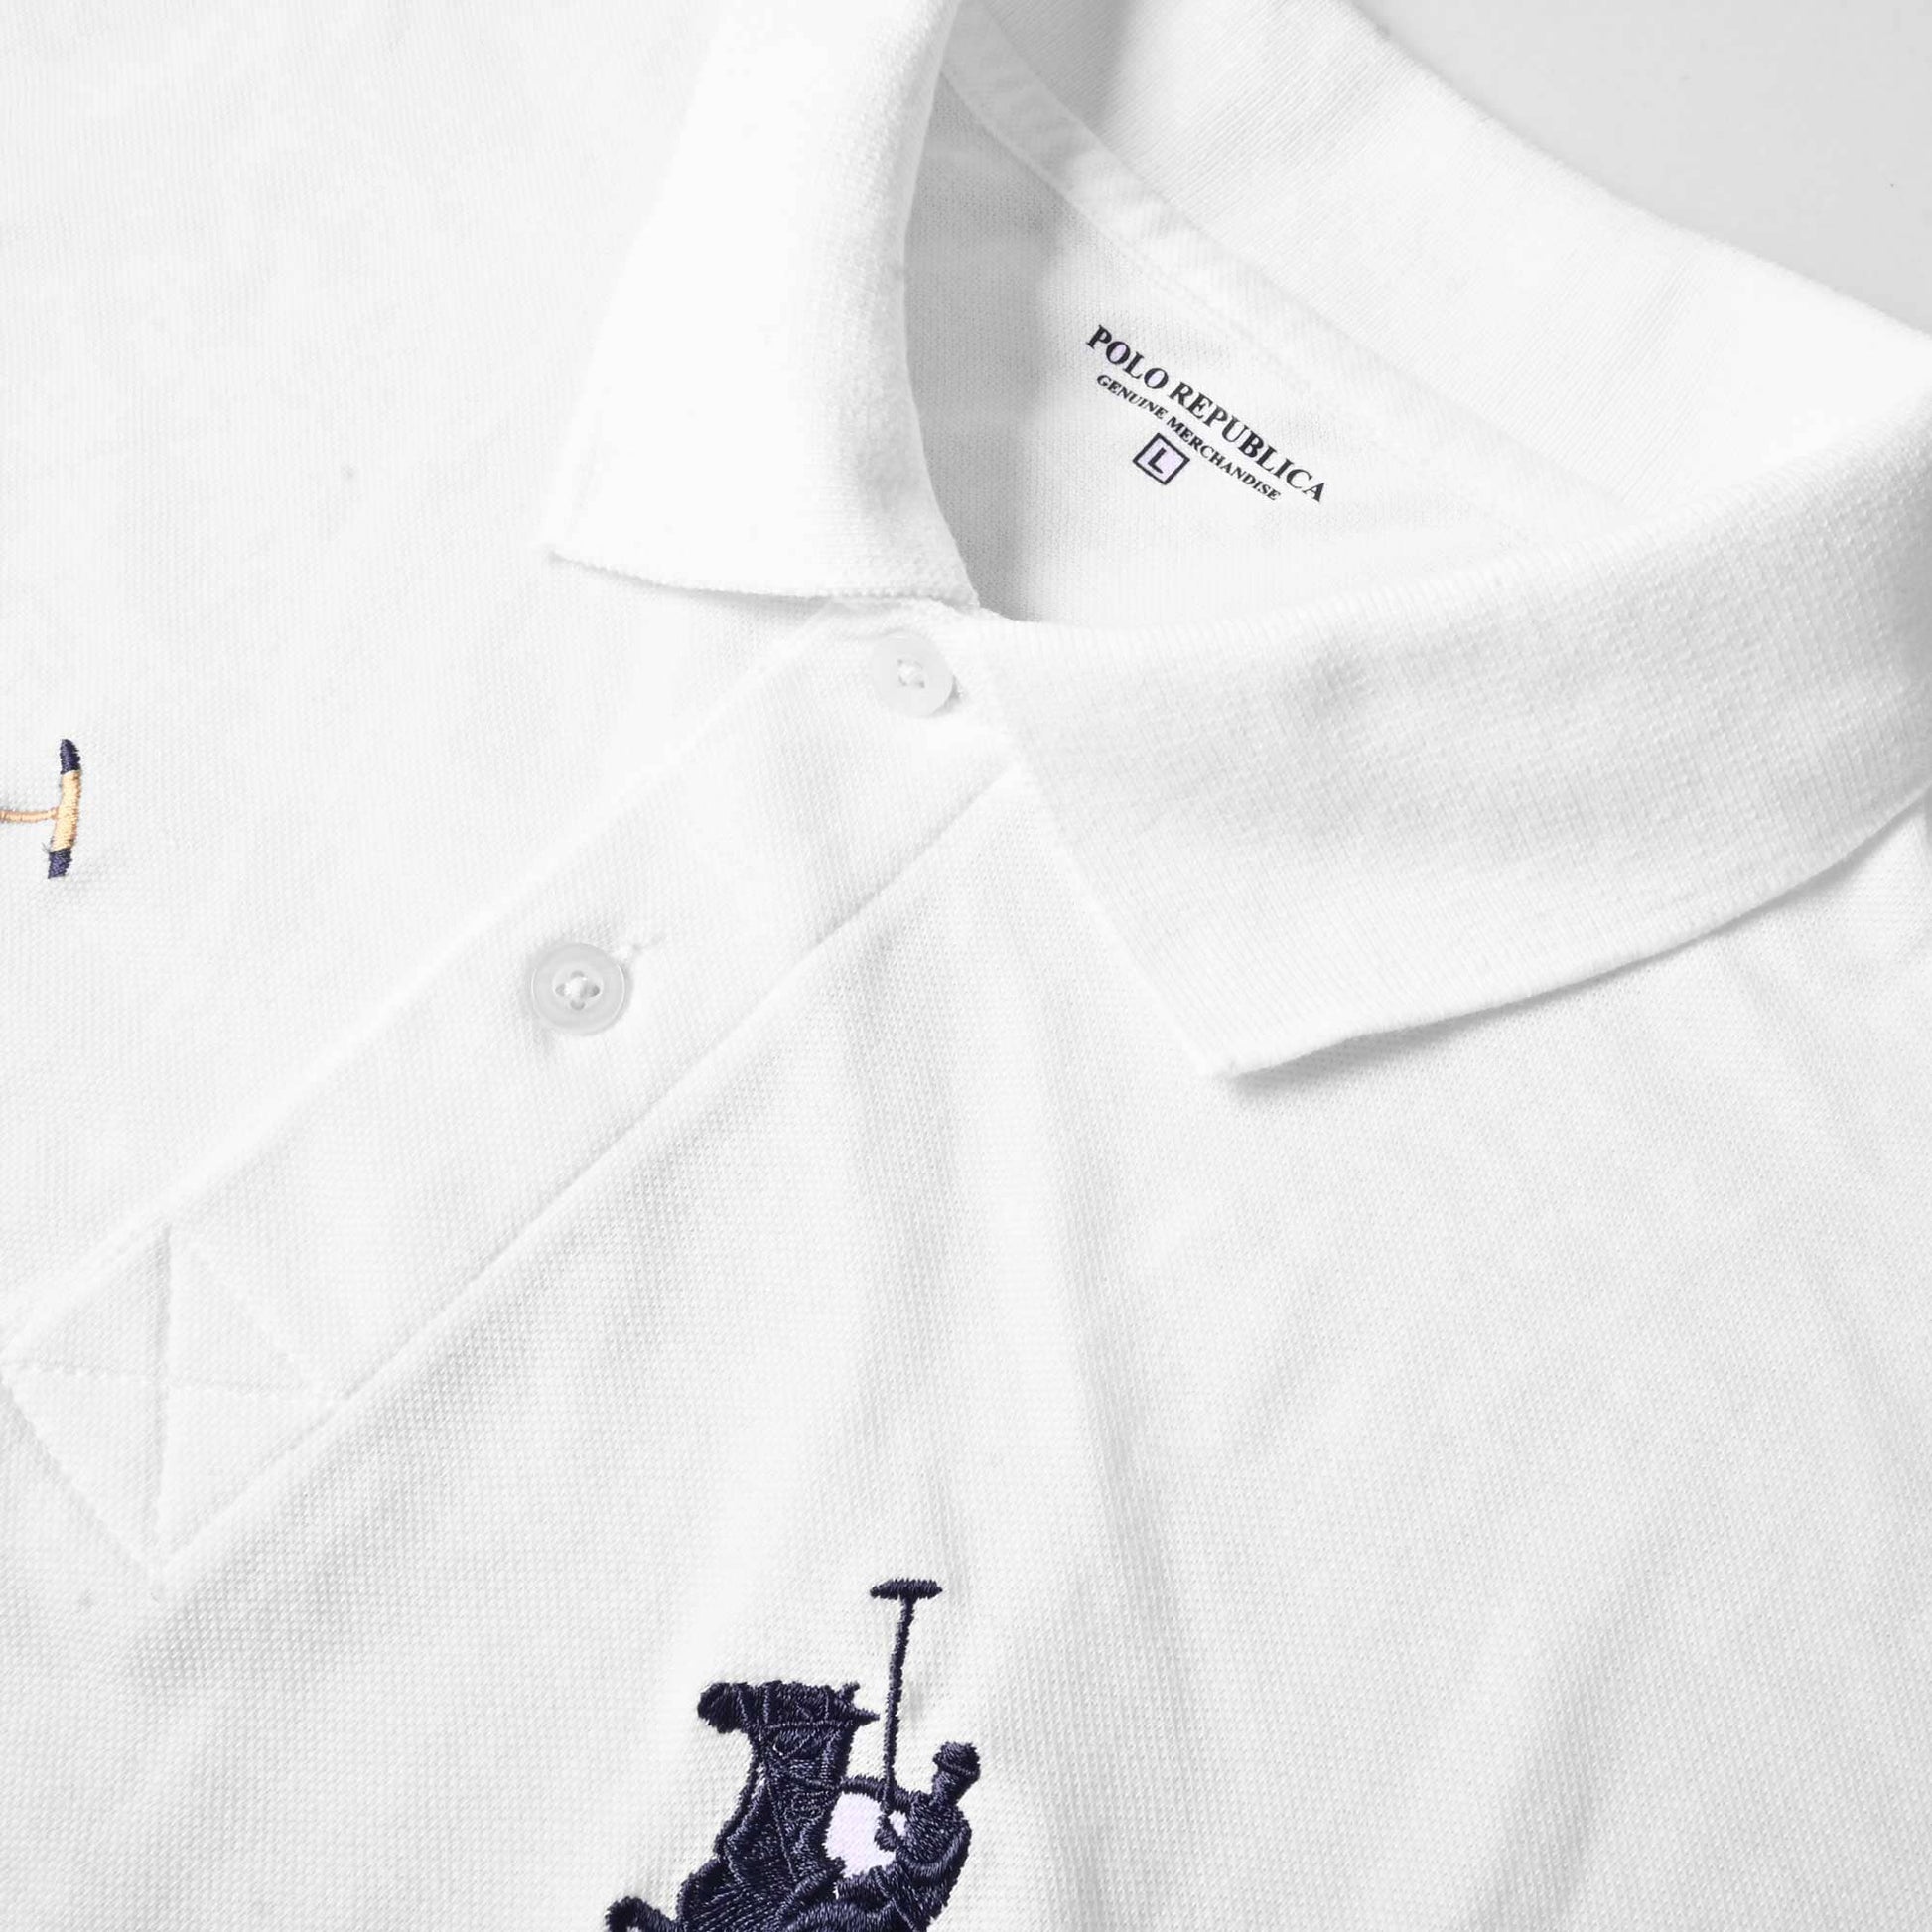 Polo Republica Men's Horse Rider & Mallet 8 Embroidered Short Sleeve Polo Shirt Men's Polo Shirt Polo Republica 